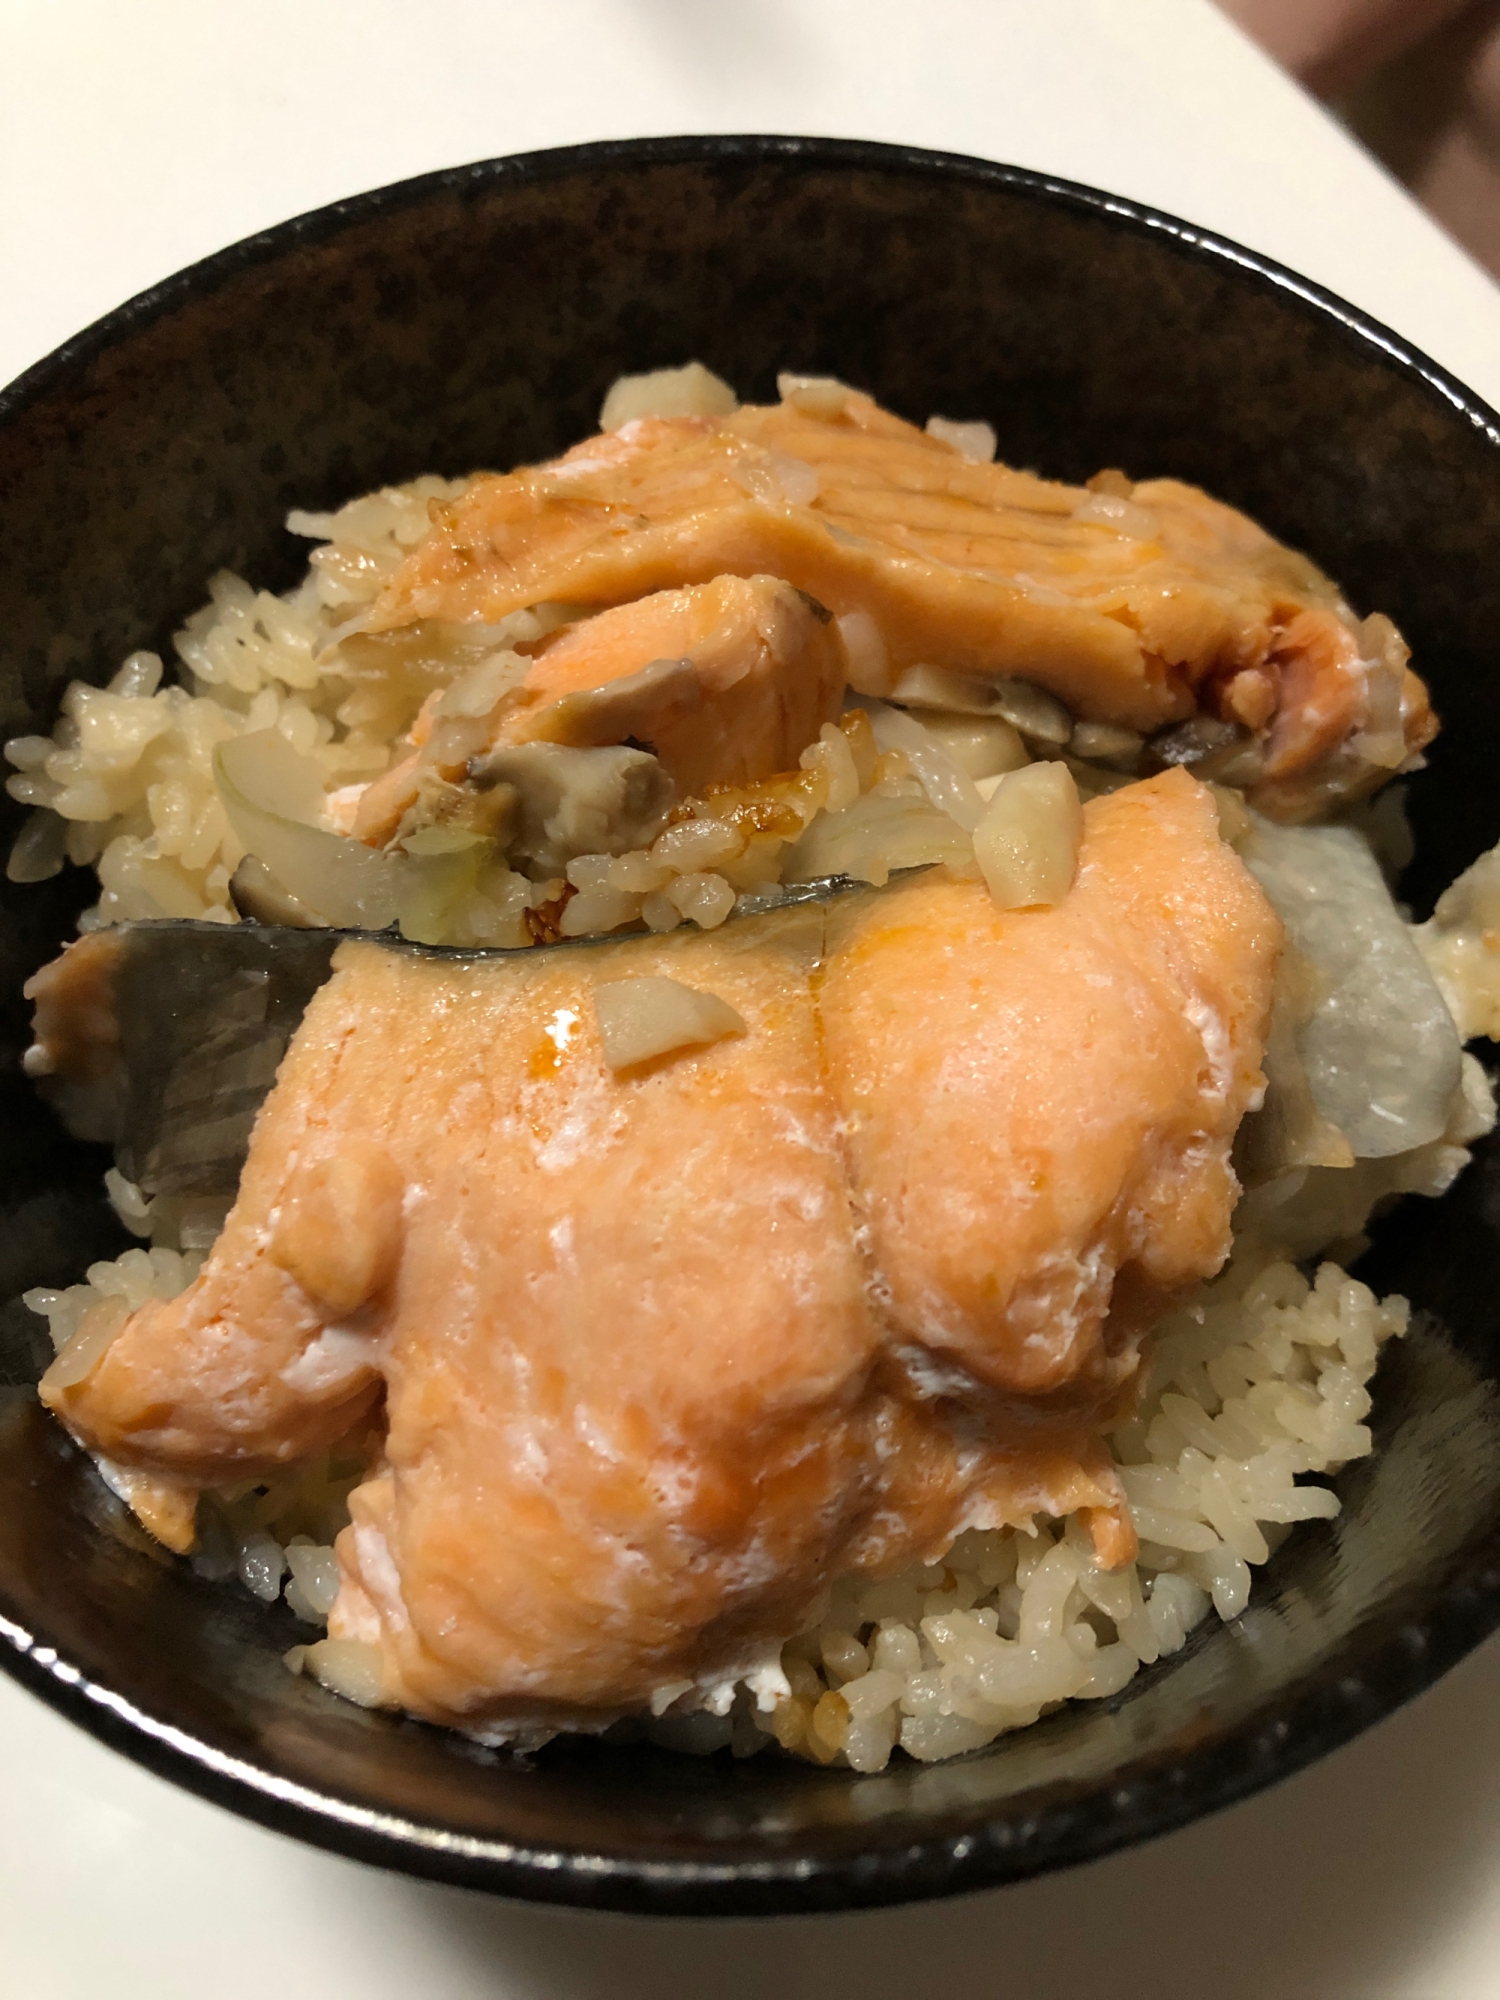 鮭の1番簡単で美味しい食べ方 鮭飯 炊飯器でできる レシピ 作り方 By 空飛ぶチャンドゥー ᵕᴗᵕ 楽天レシピ